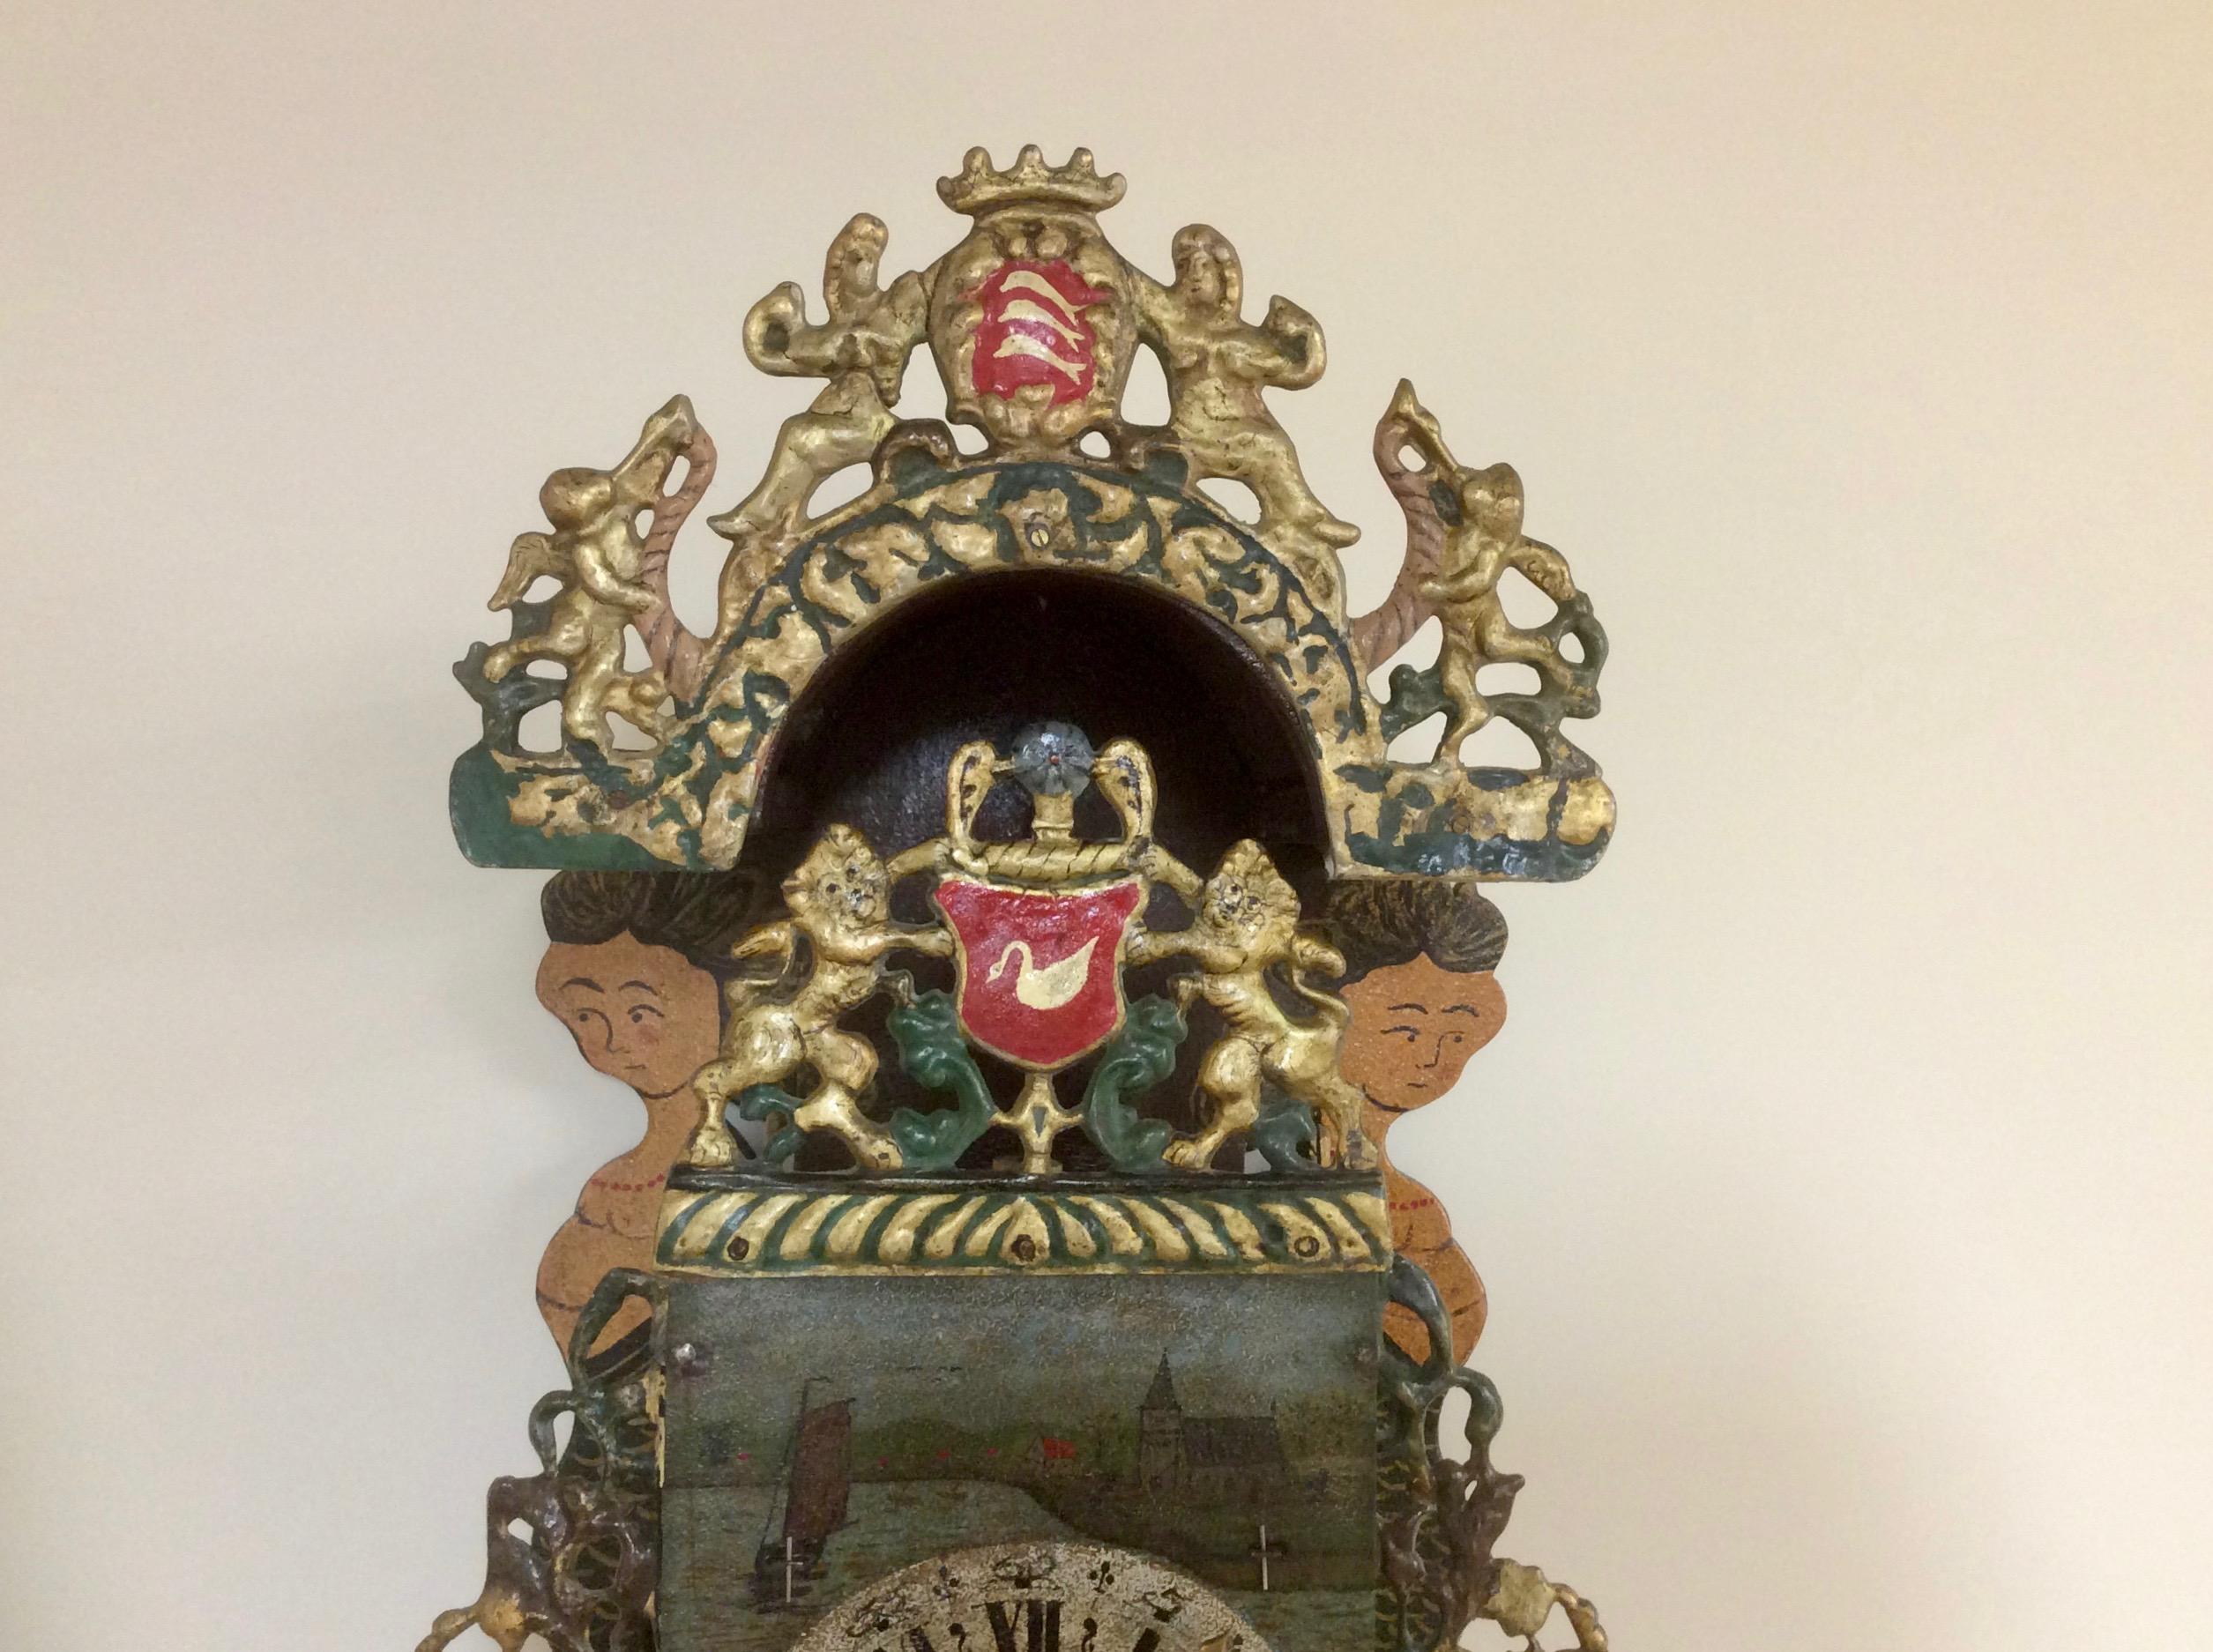 Holländische Stoelklok

Gewölbte Konsole mit zwei gemalten Nixen, vergoldeter Bleikranz mit zwei Löwen neben einem Wappen, seitlich verglaste Fenster mit durchbrochenen Laubsägearbeiten.

Der gemalte Ziffernring mit römischen Ziffern, die